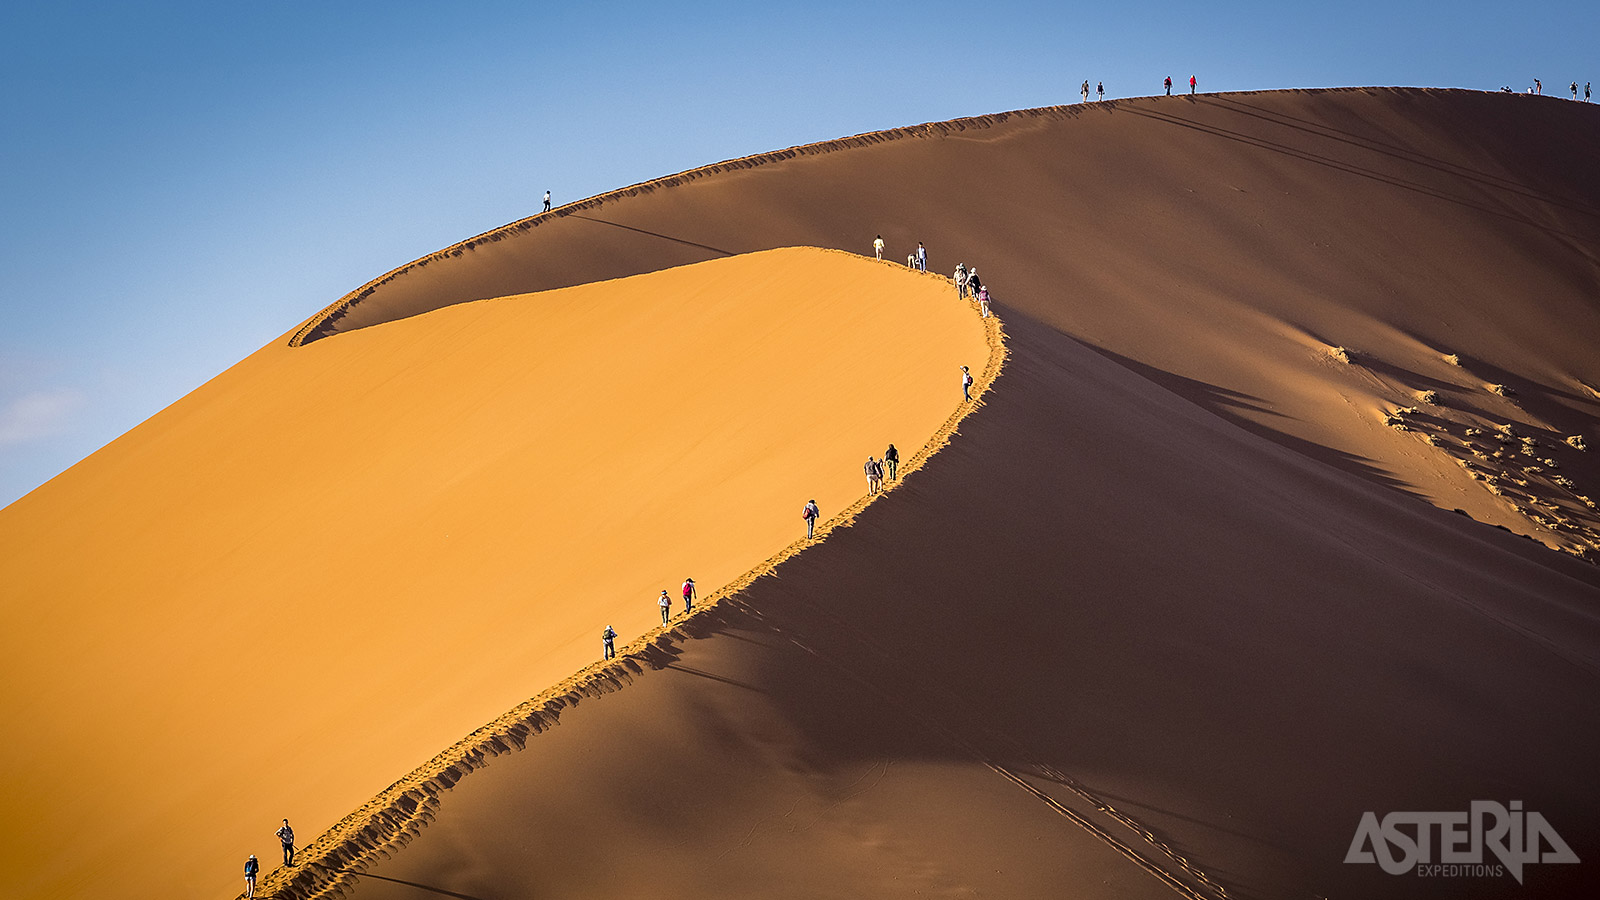 Dune 45 is de bekendste zandduin in Sesriem Canyon in de Namib Desert